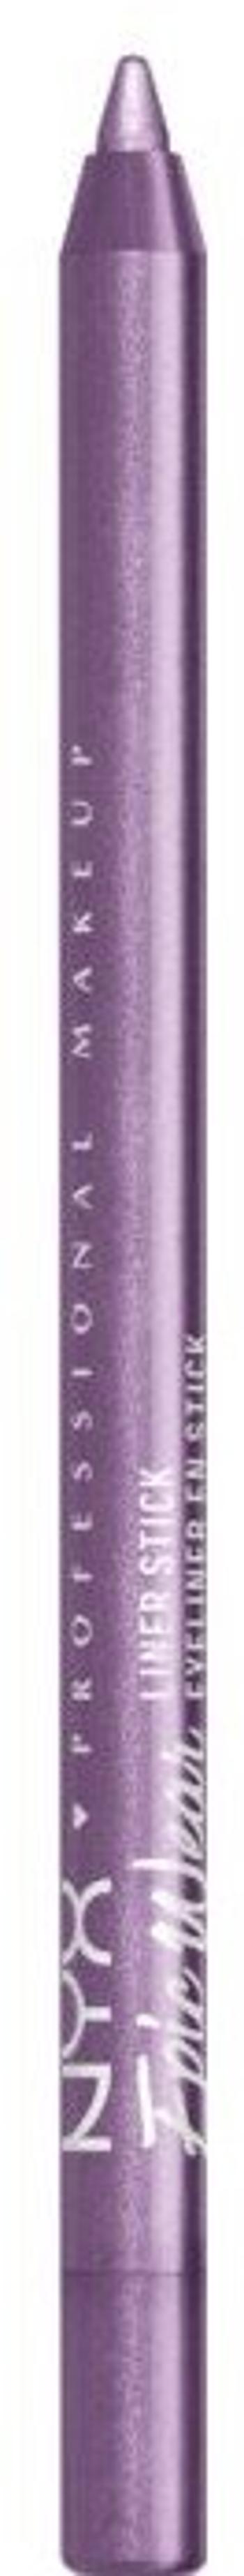 NYX Professional Makeup Epic Wear Liner Sticks voděodolná linka na oči - 20 Graphic Purple 1.2 g